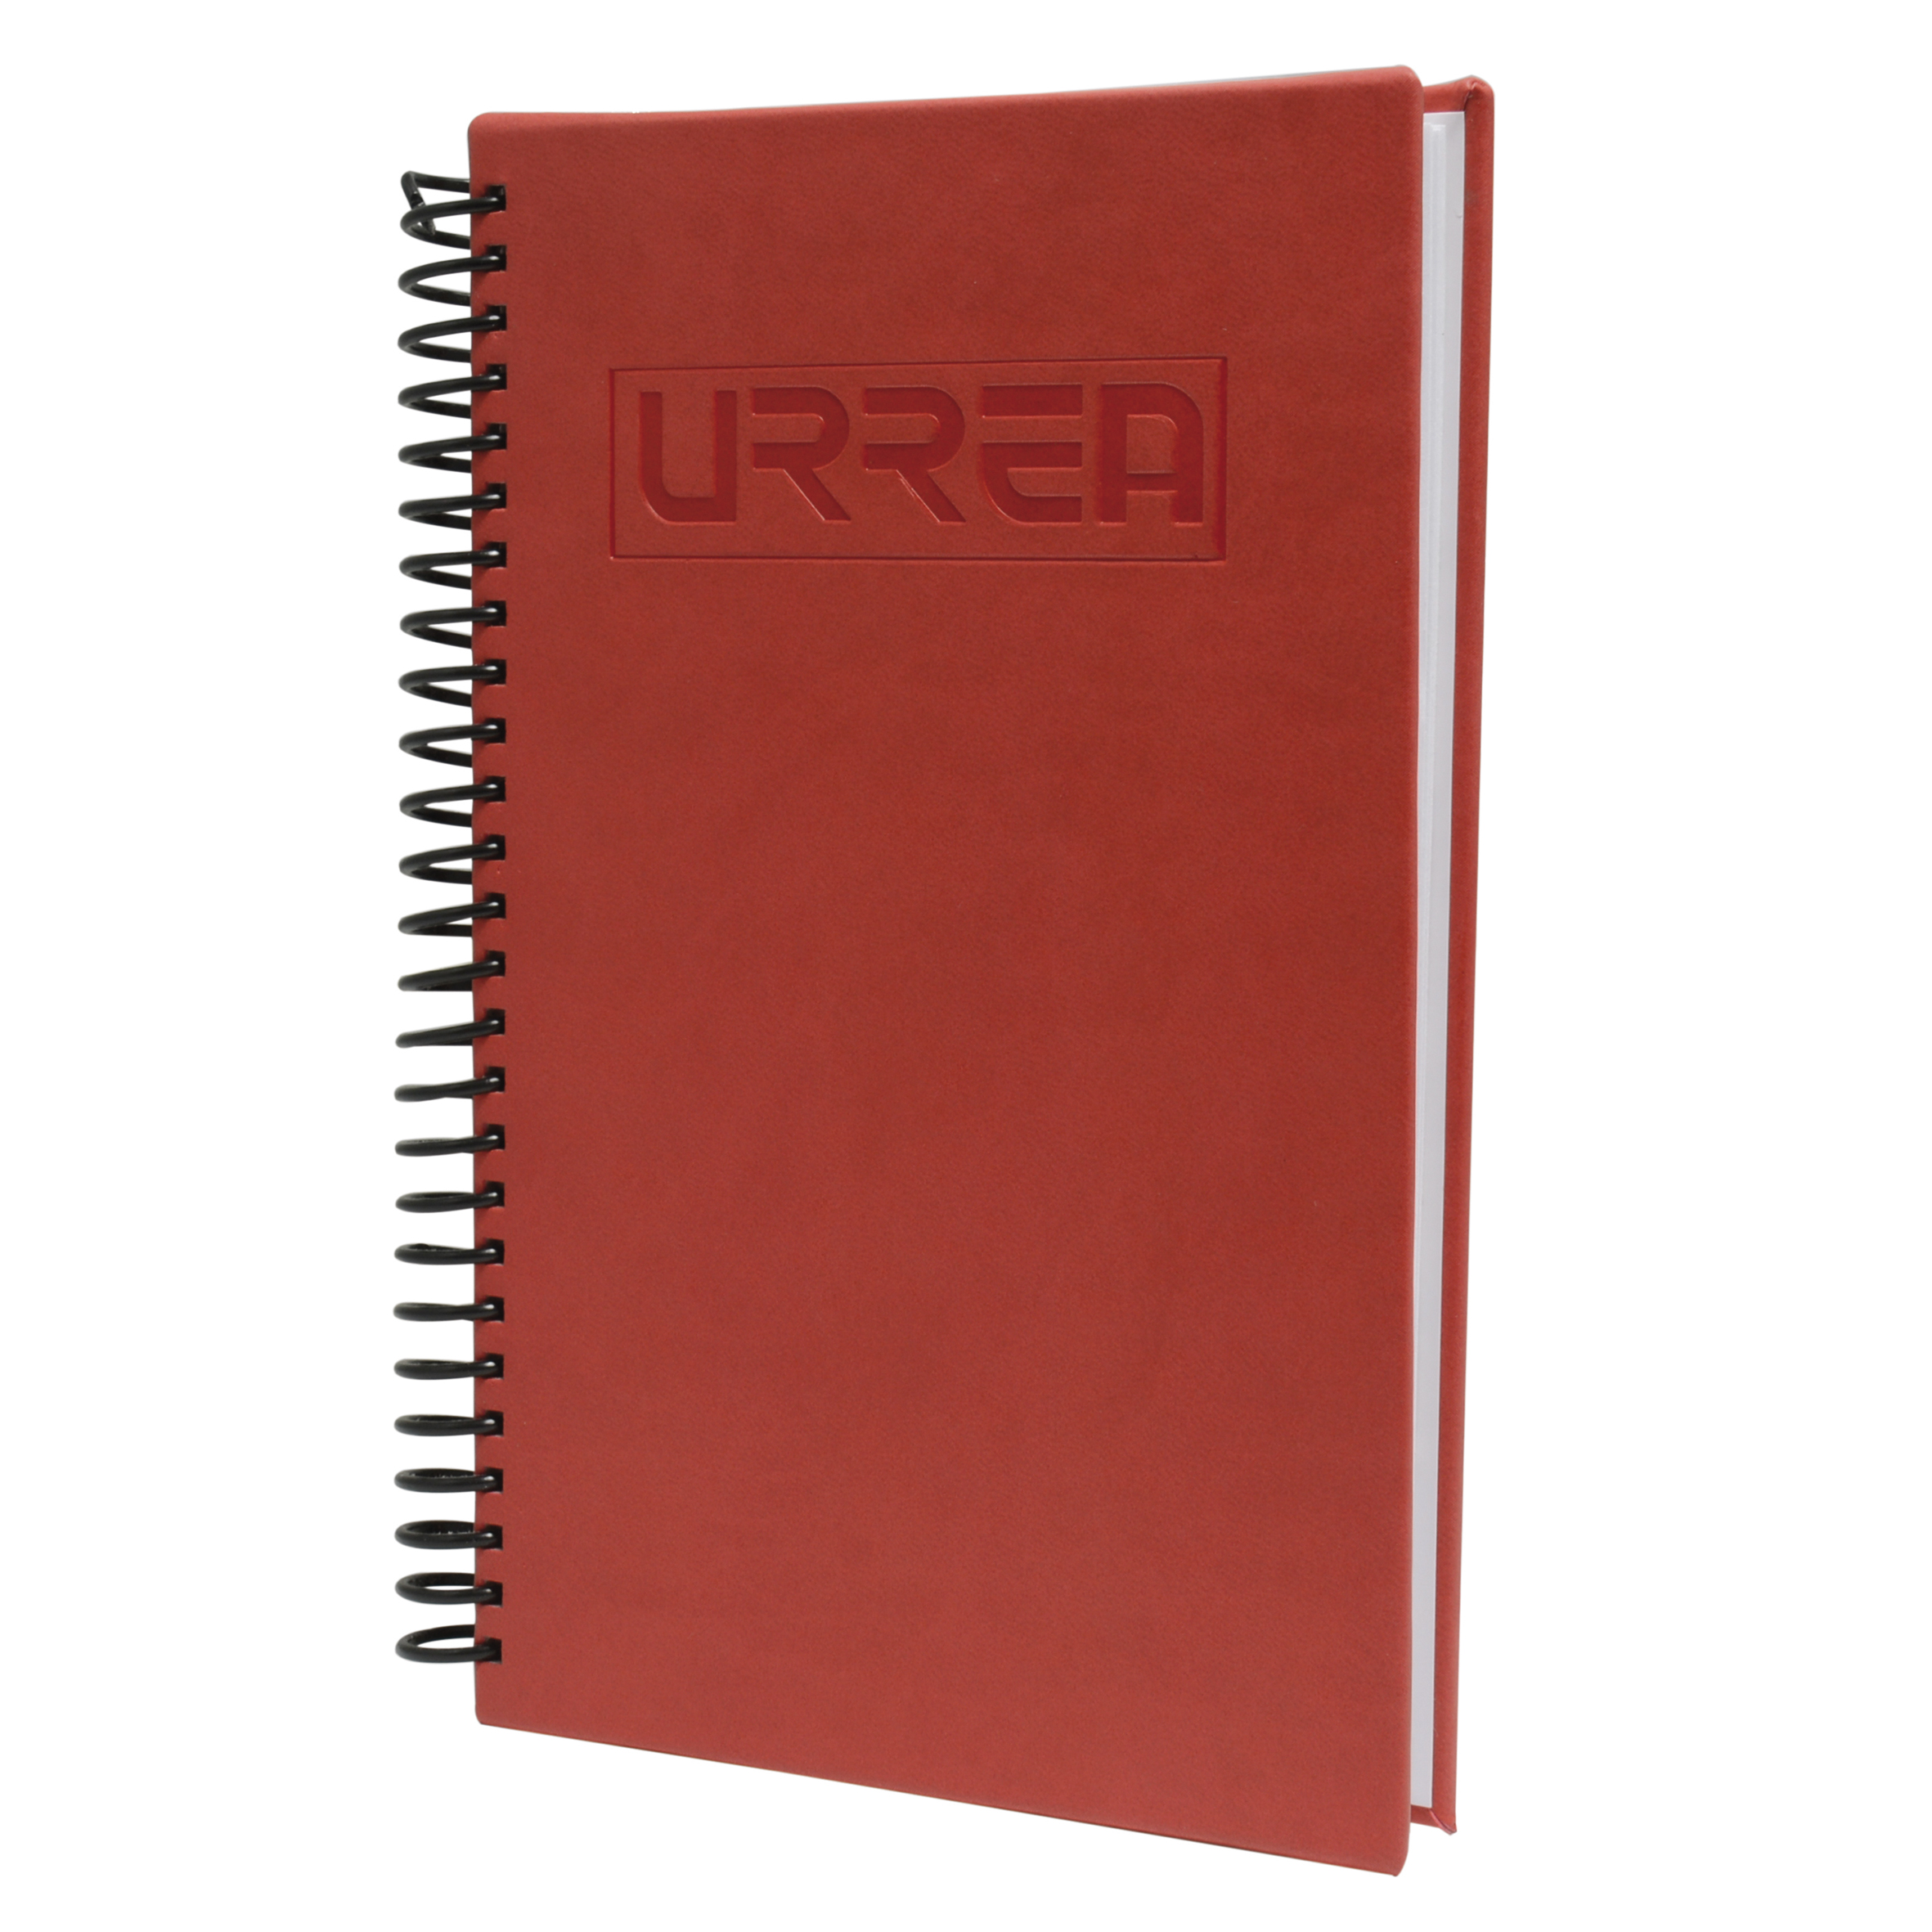 Imagen para Cuaderno de raya con pasta dura de vinil, 100 hojas de Grupo Urrea